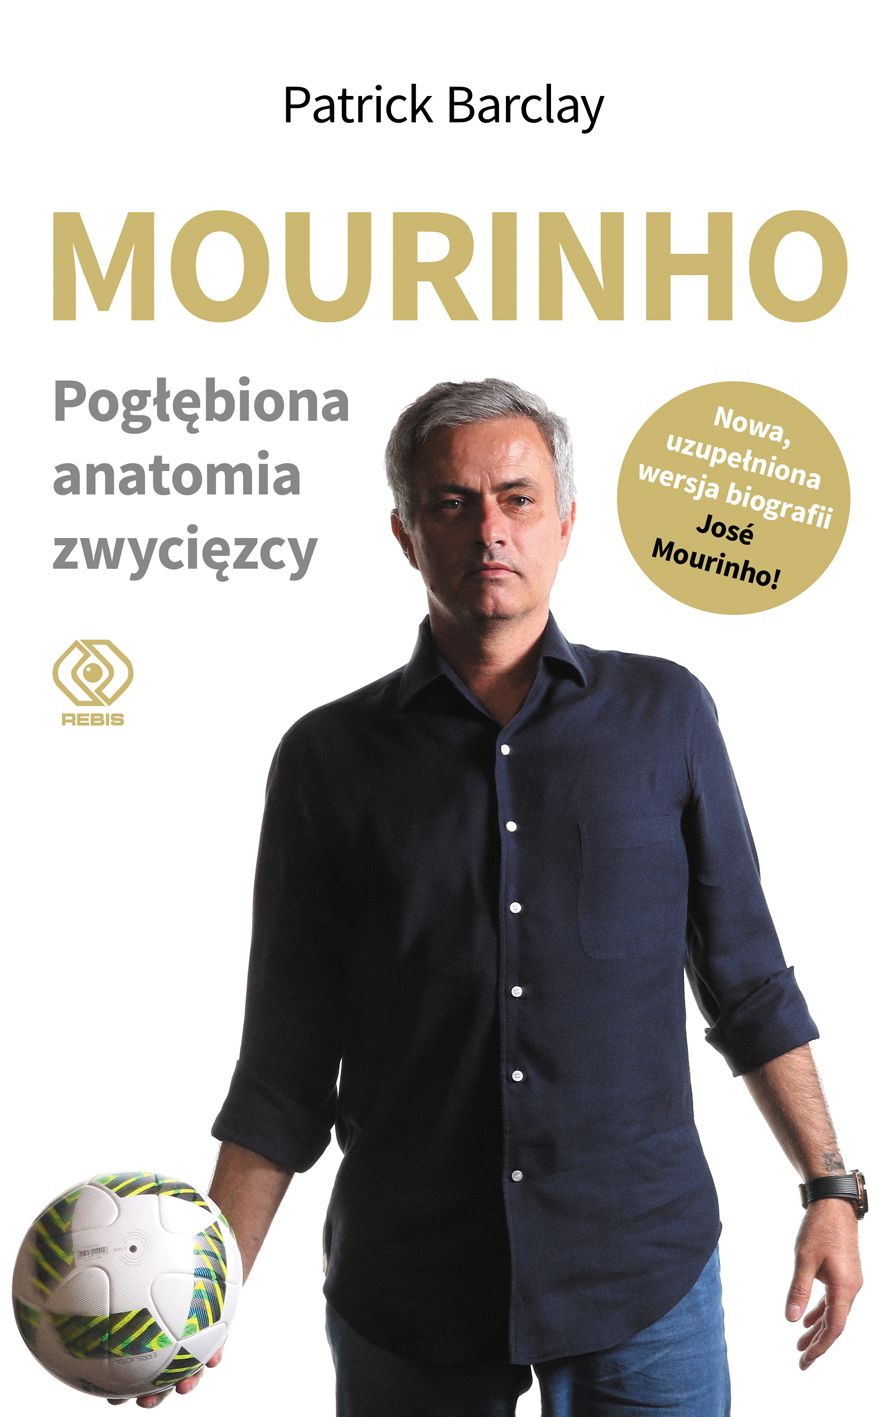  "José Mourinho. Pogłębiona anatomia zwycięzcy", Patrick Barcaly,